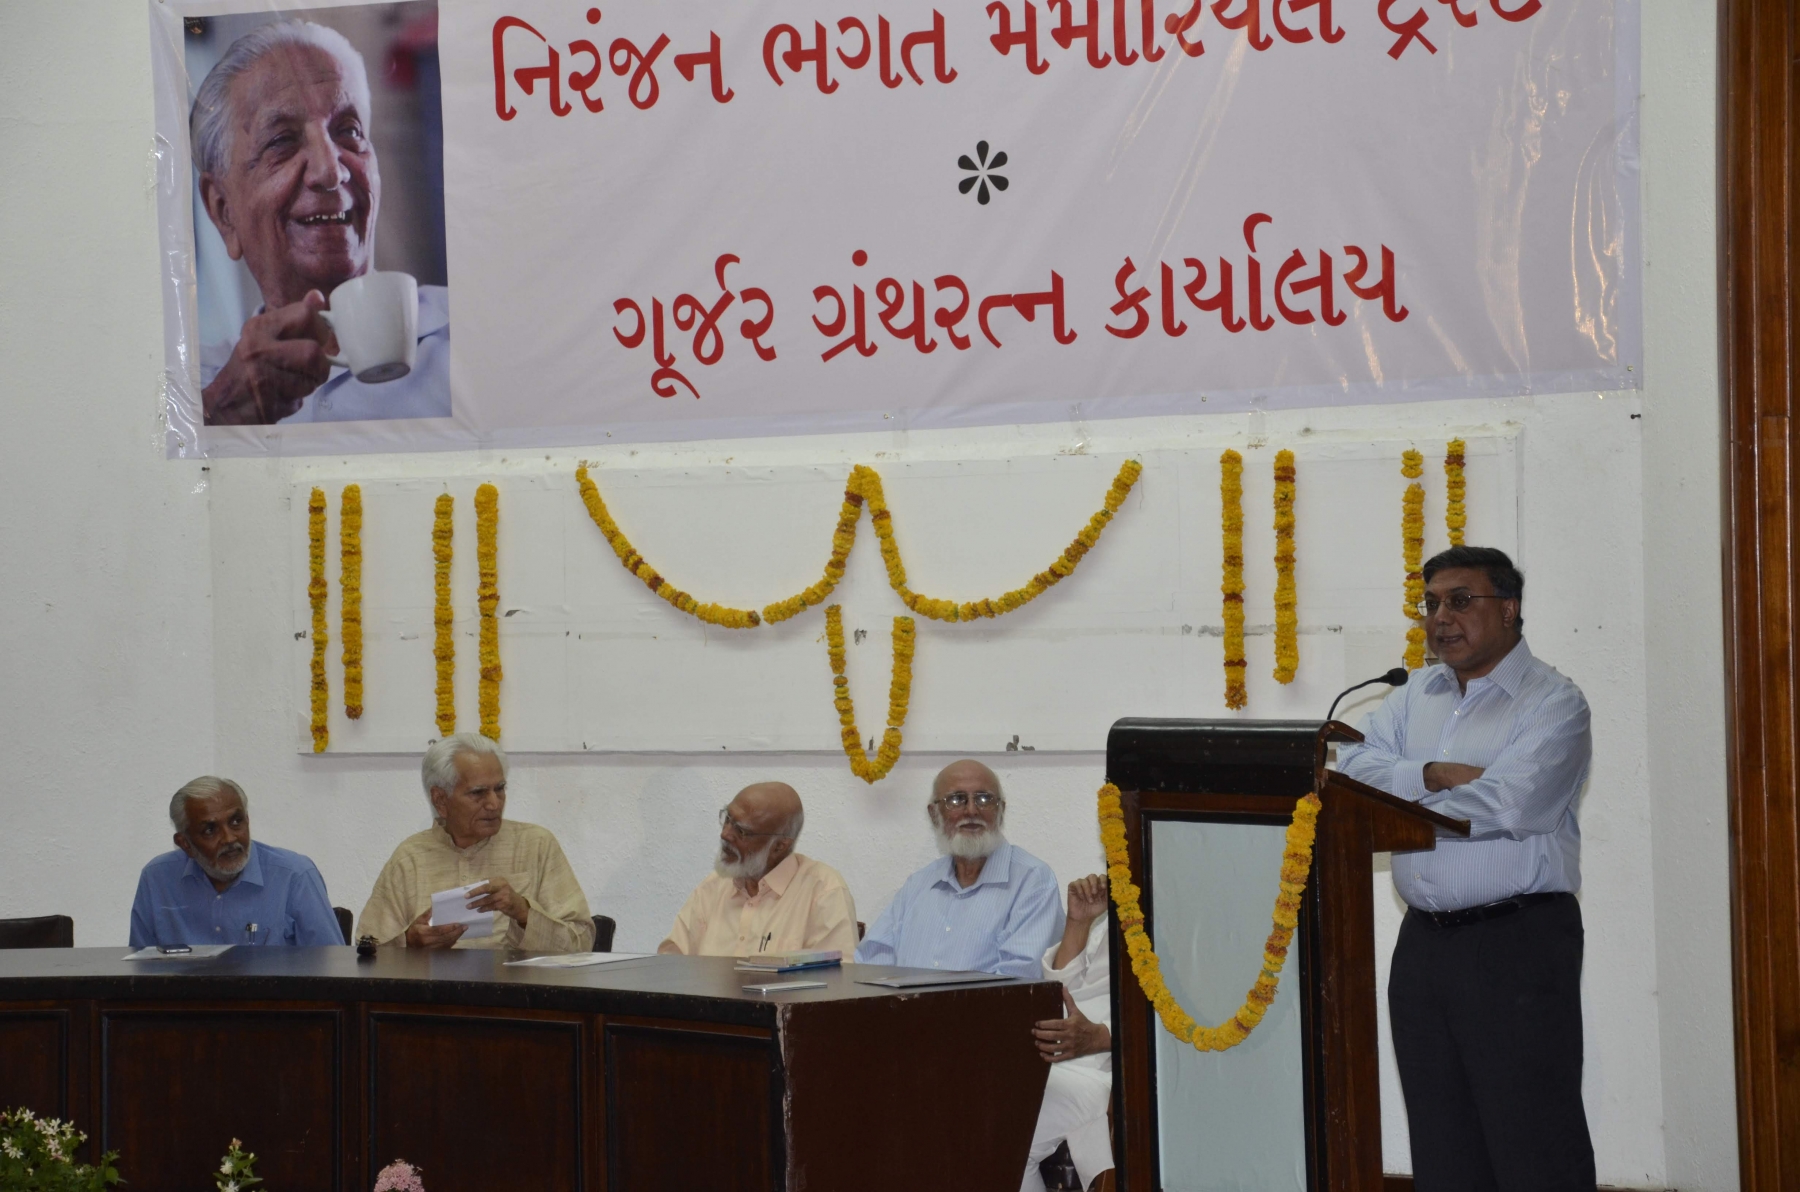 Shri Sandip Bhagat’s talk at the event